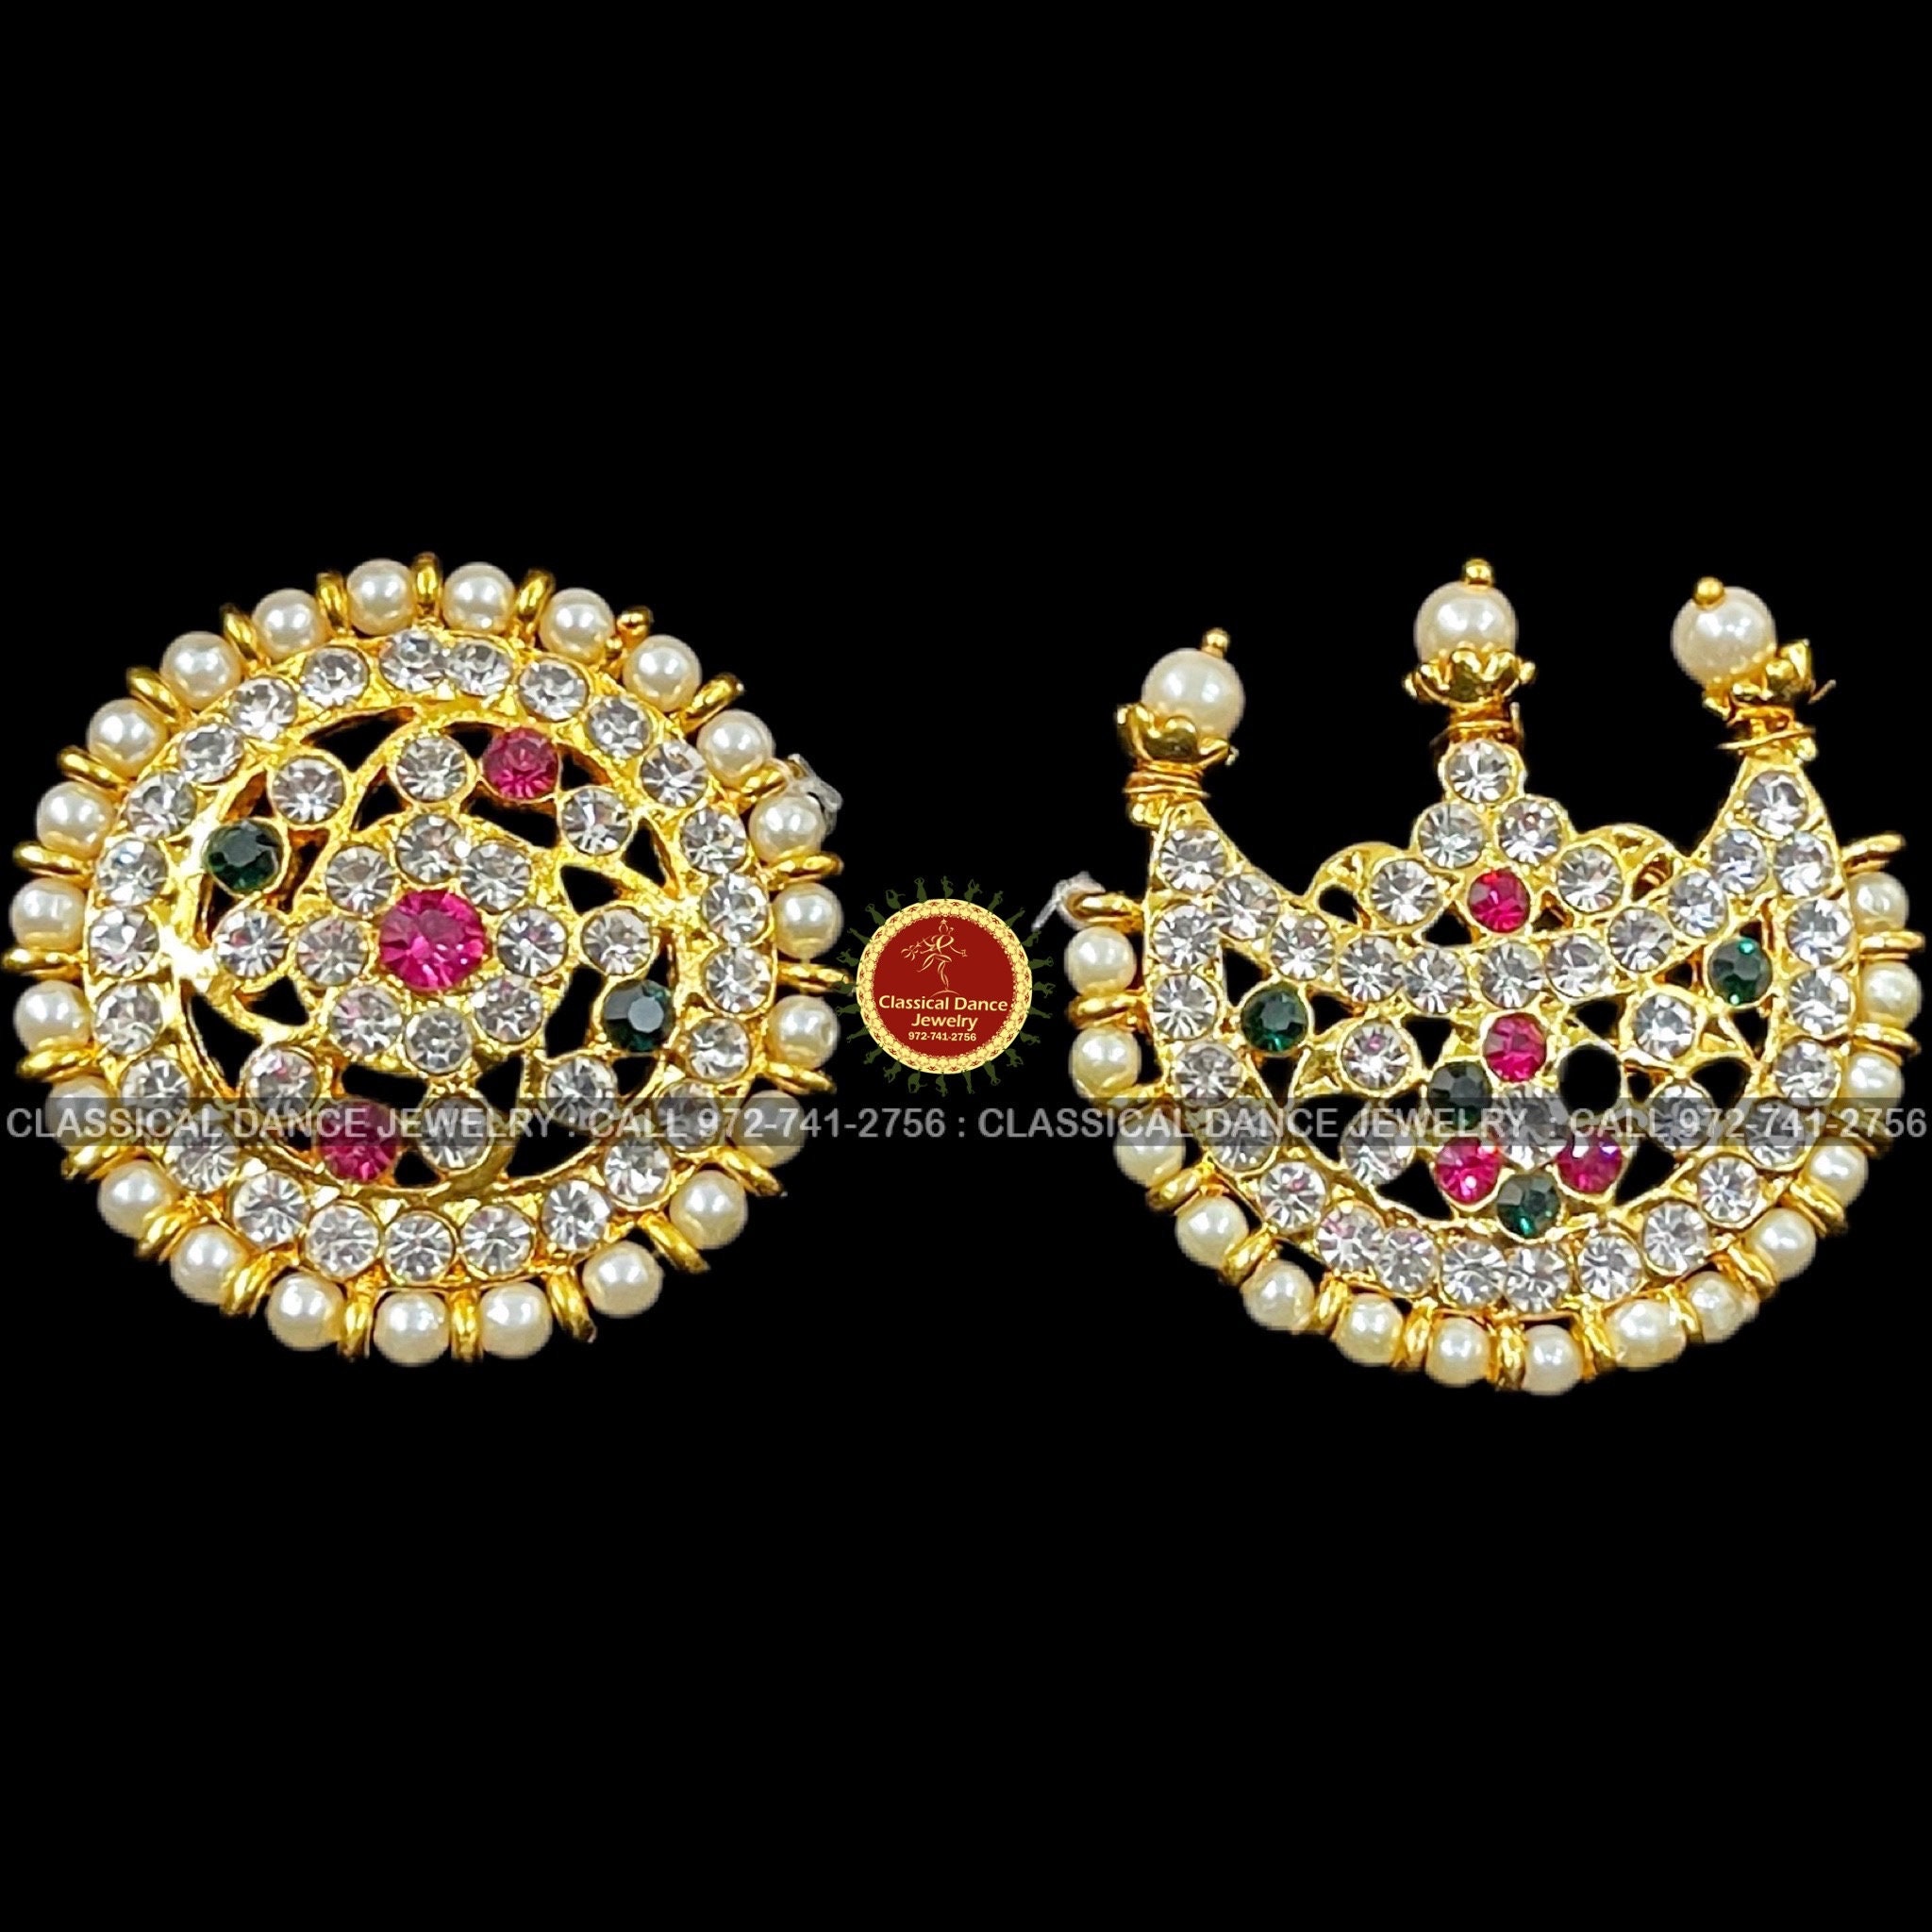 WHITE STONE MULTI Surya Chandra Indian Jewelry Sun Moon Bharatanatyam,  Kuchipudi, Engagement, Weddings Classical Dance Jewelry - Etsy